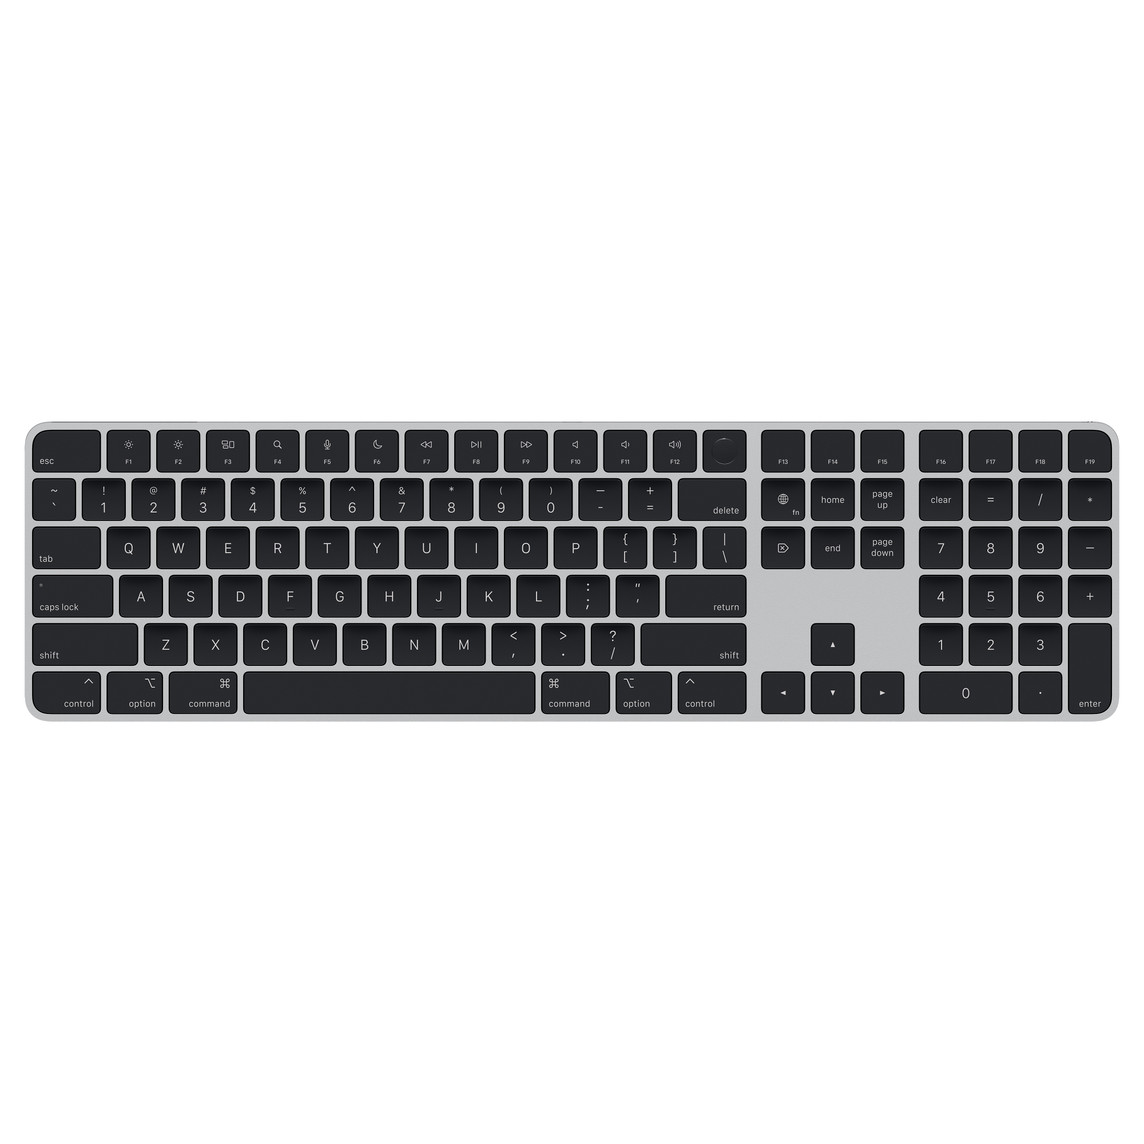 Magic Keyboard con teclado numérico negro con teclas de dirección posicionadas en forma de T invertida y teclas para retroceder o avanzar en una página.